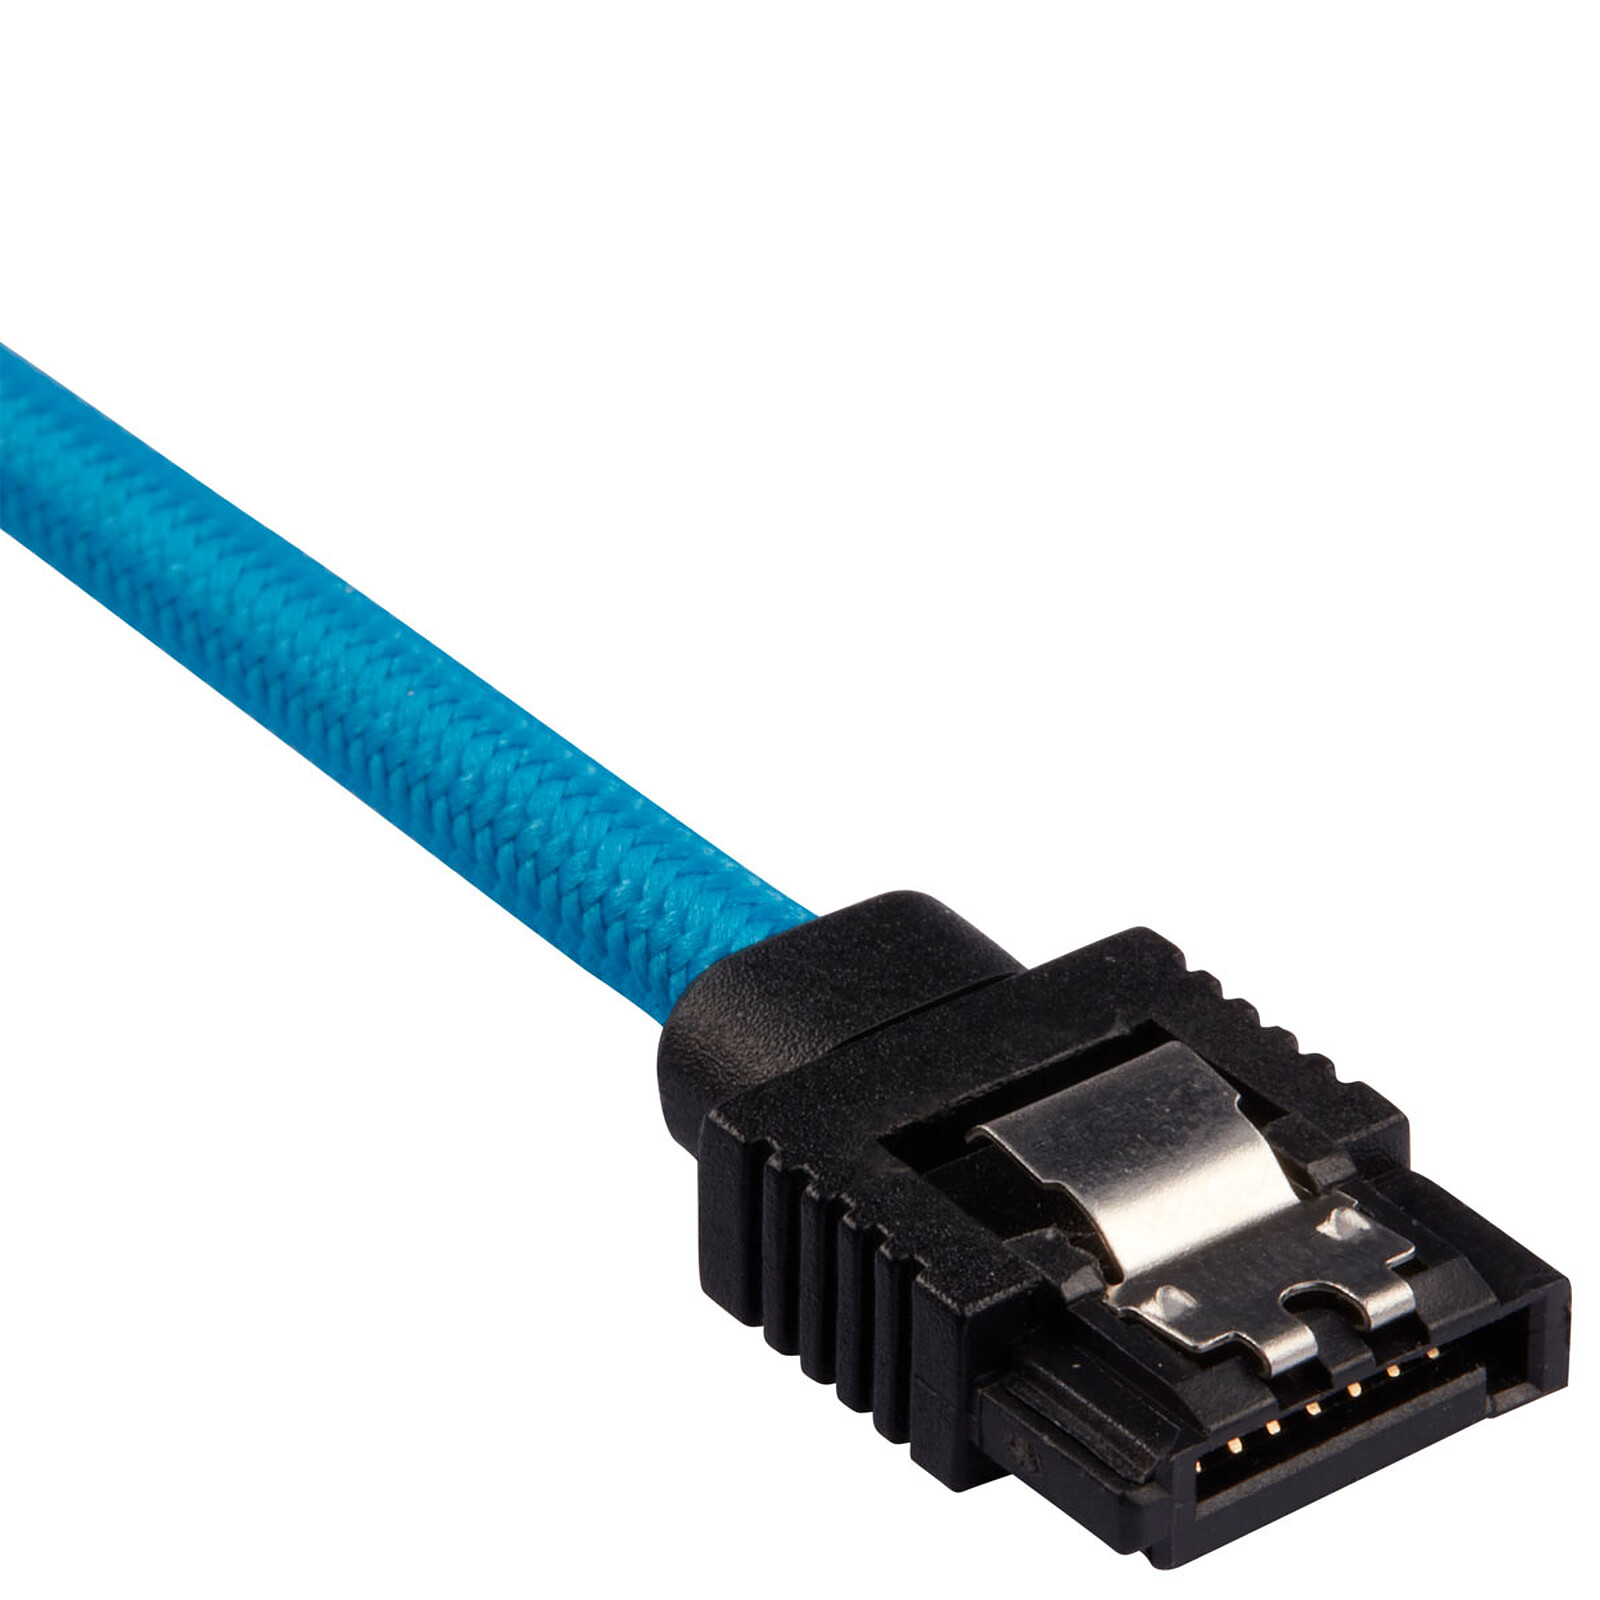 Cable SATA 2 en 1 con alimentación Molex (para 1 HDD o SSD) - Serial ATA -  LDLC